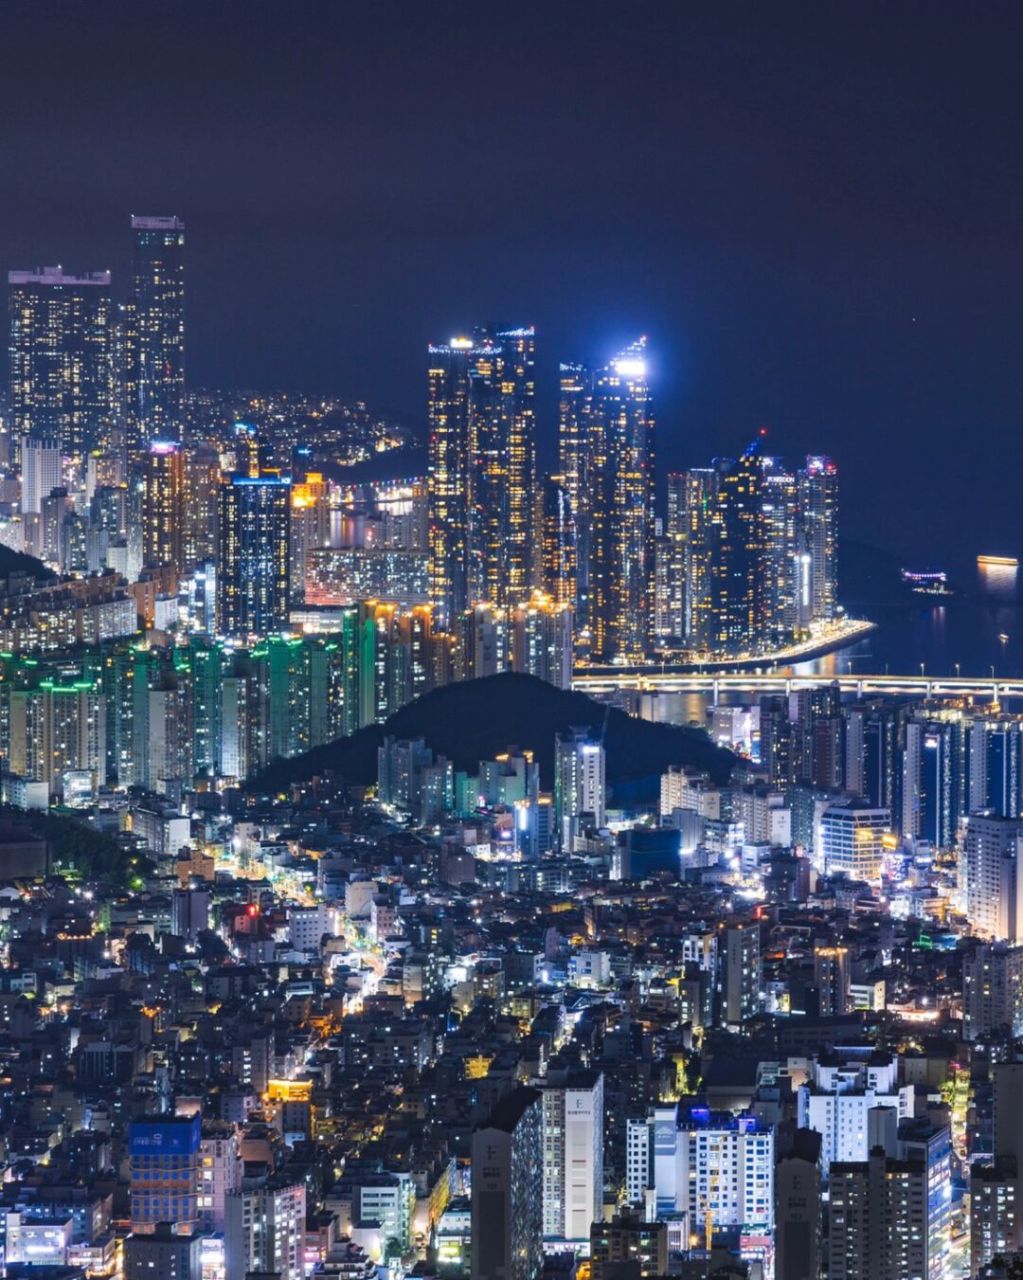 91釜山有很多美丽的夜景[期待] 7515有很多可以一边看夜景一边